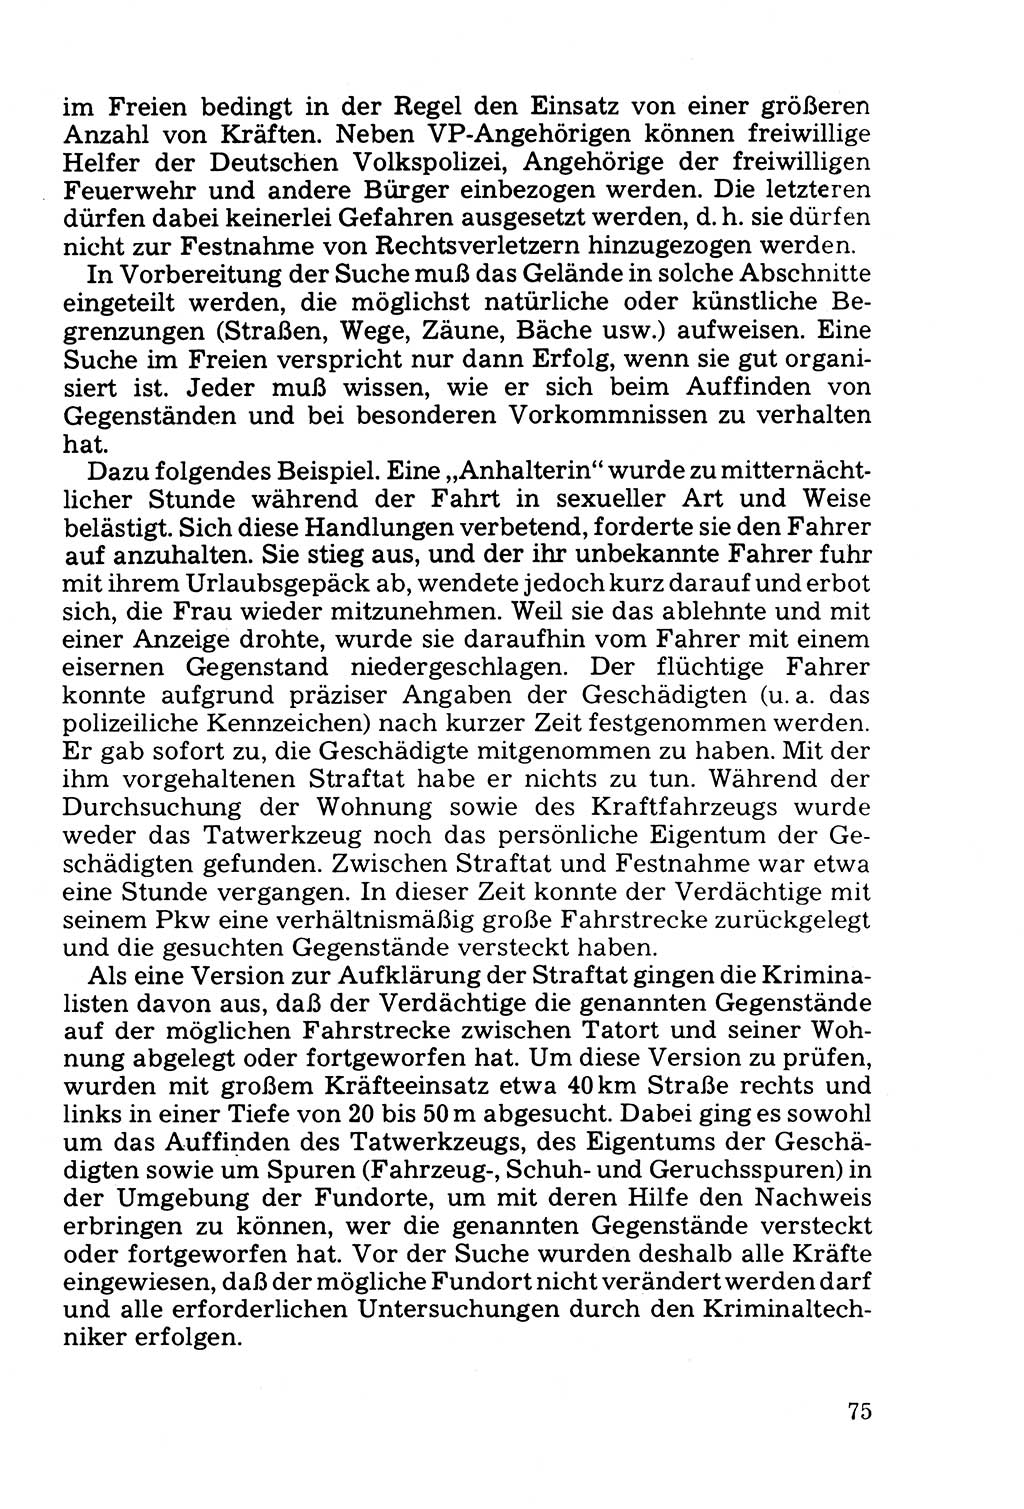 Die Durchsuchung und die Beschlagnahme [Deutsche Demokratische Republik (DDR)] 1979, Seite 75 (Durchs. Beschl. DDR 1979, S. 75)